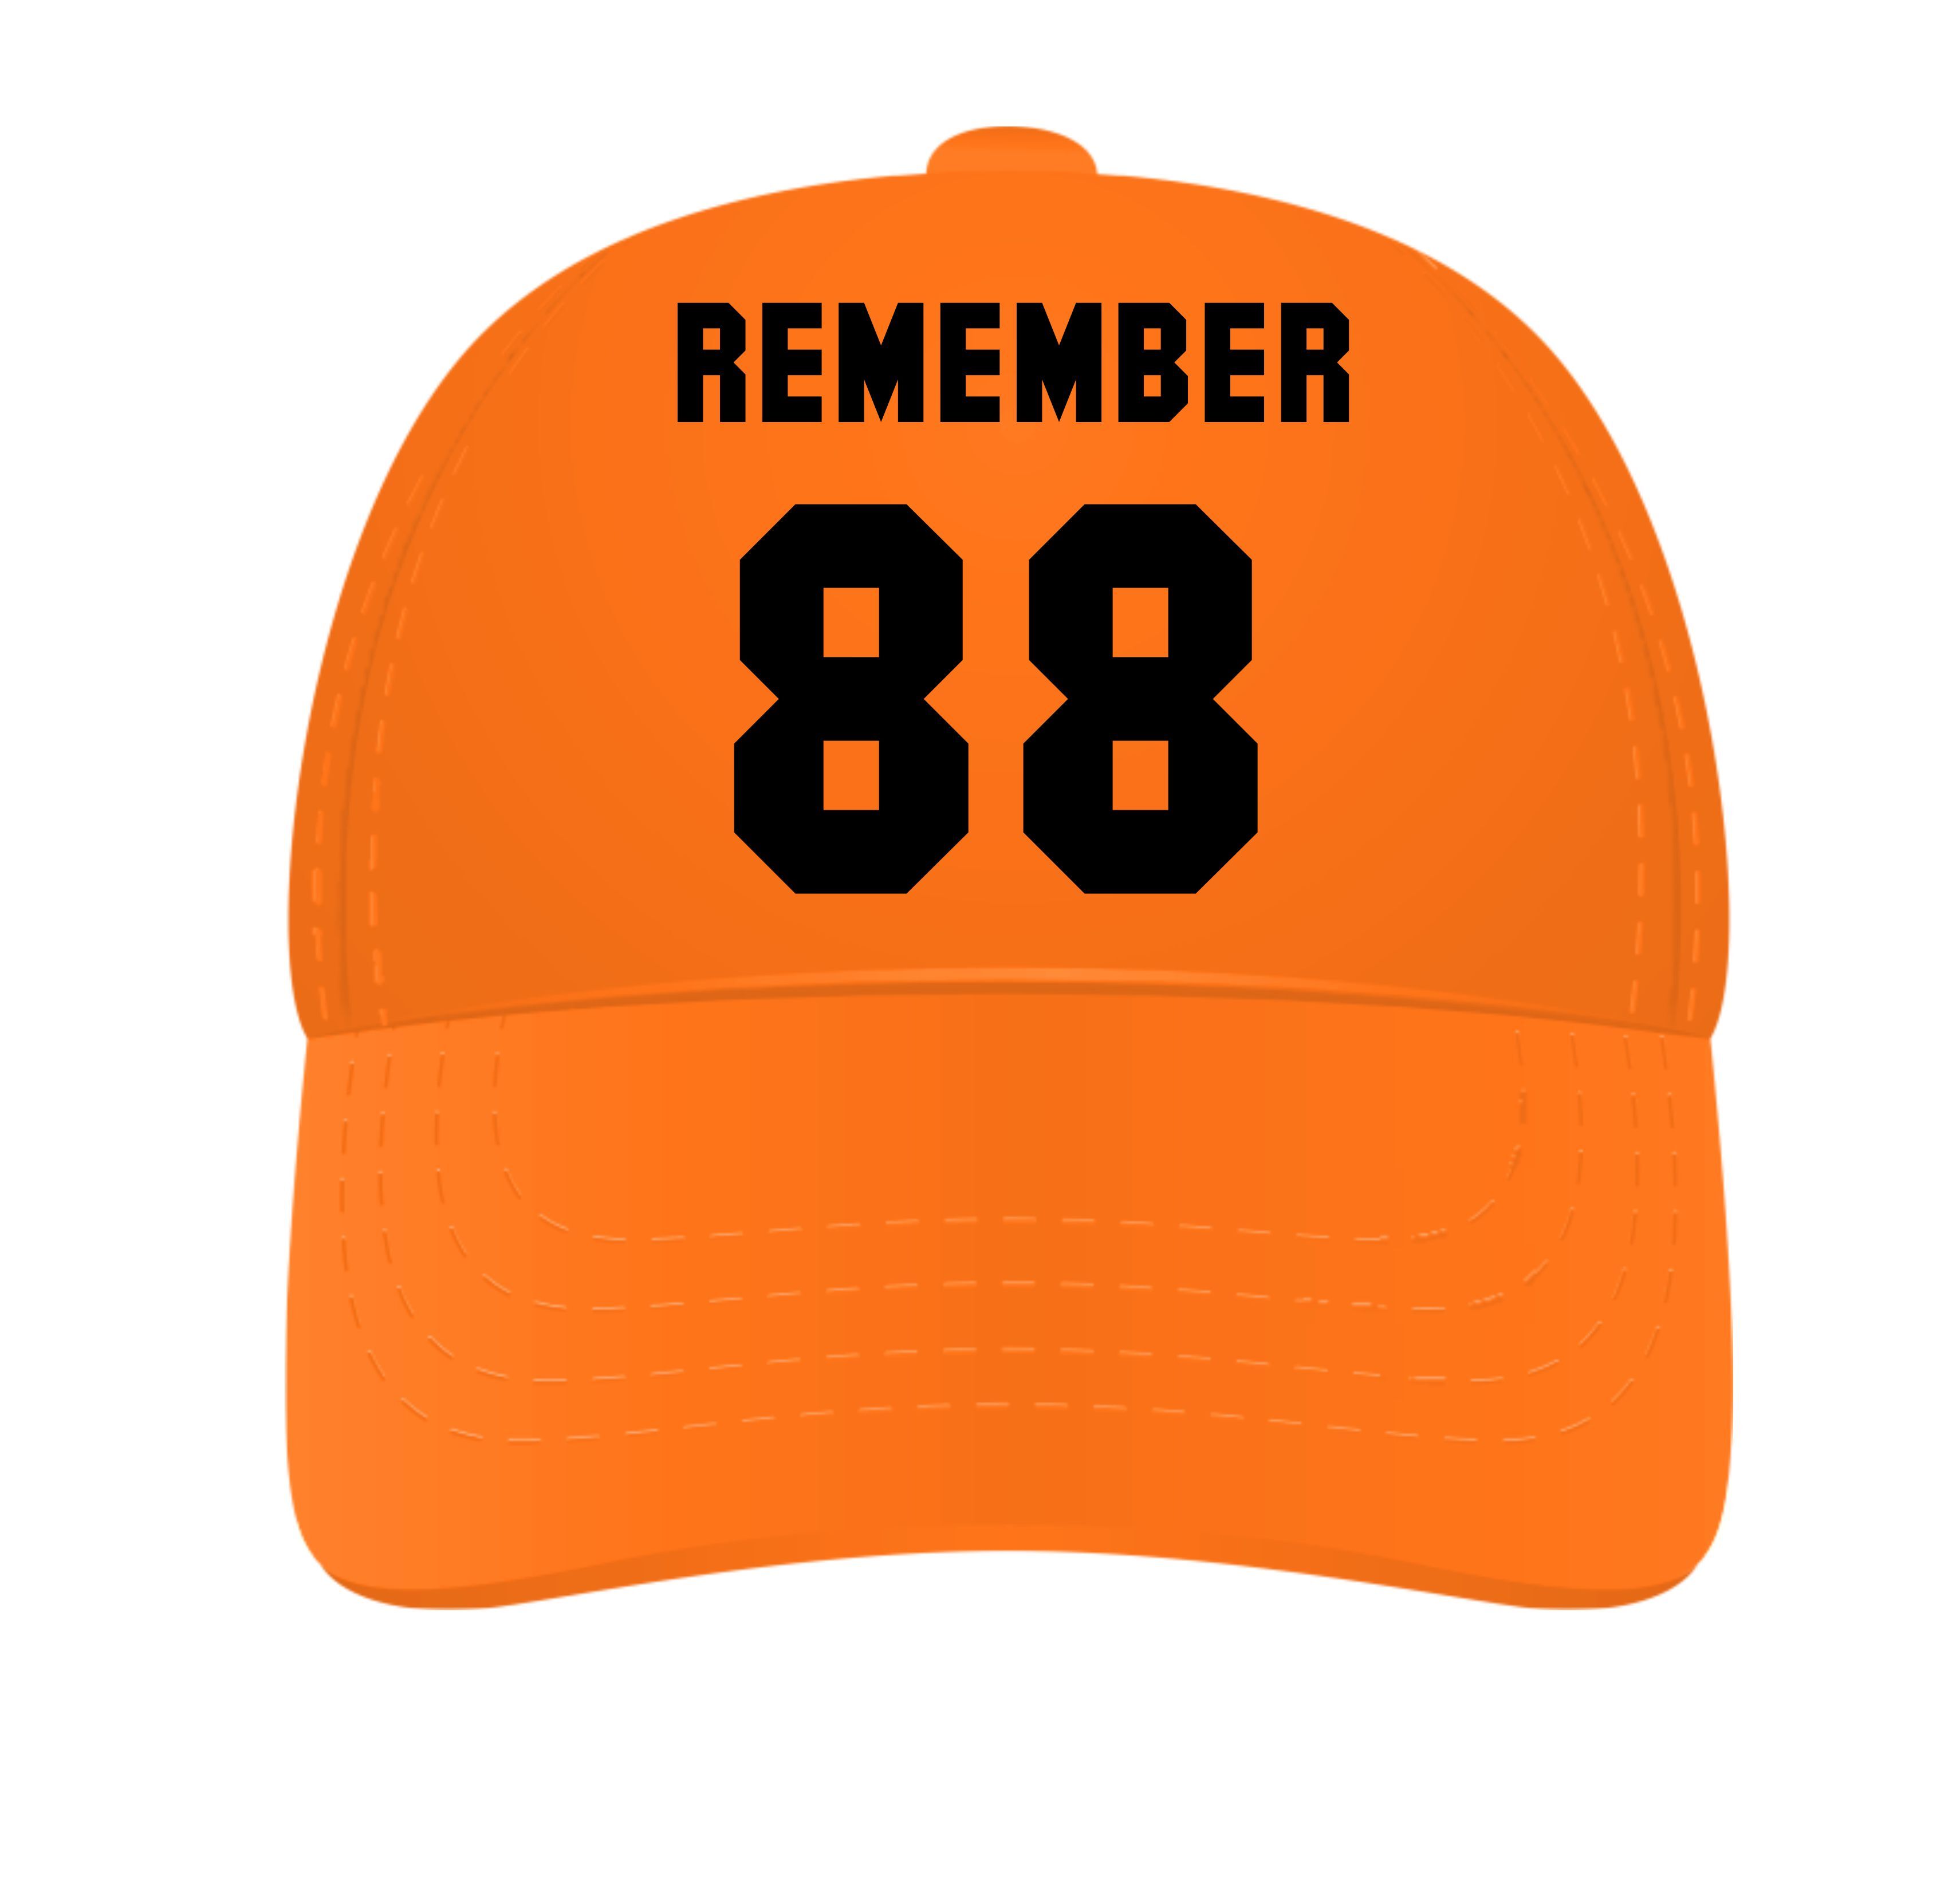 Remember 88 oranje pet